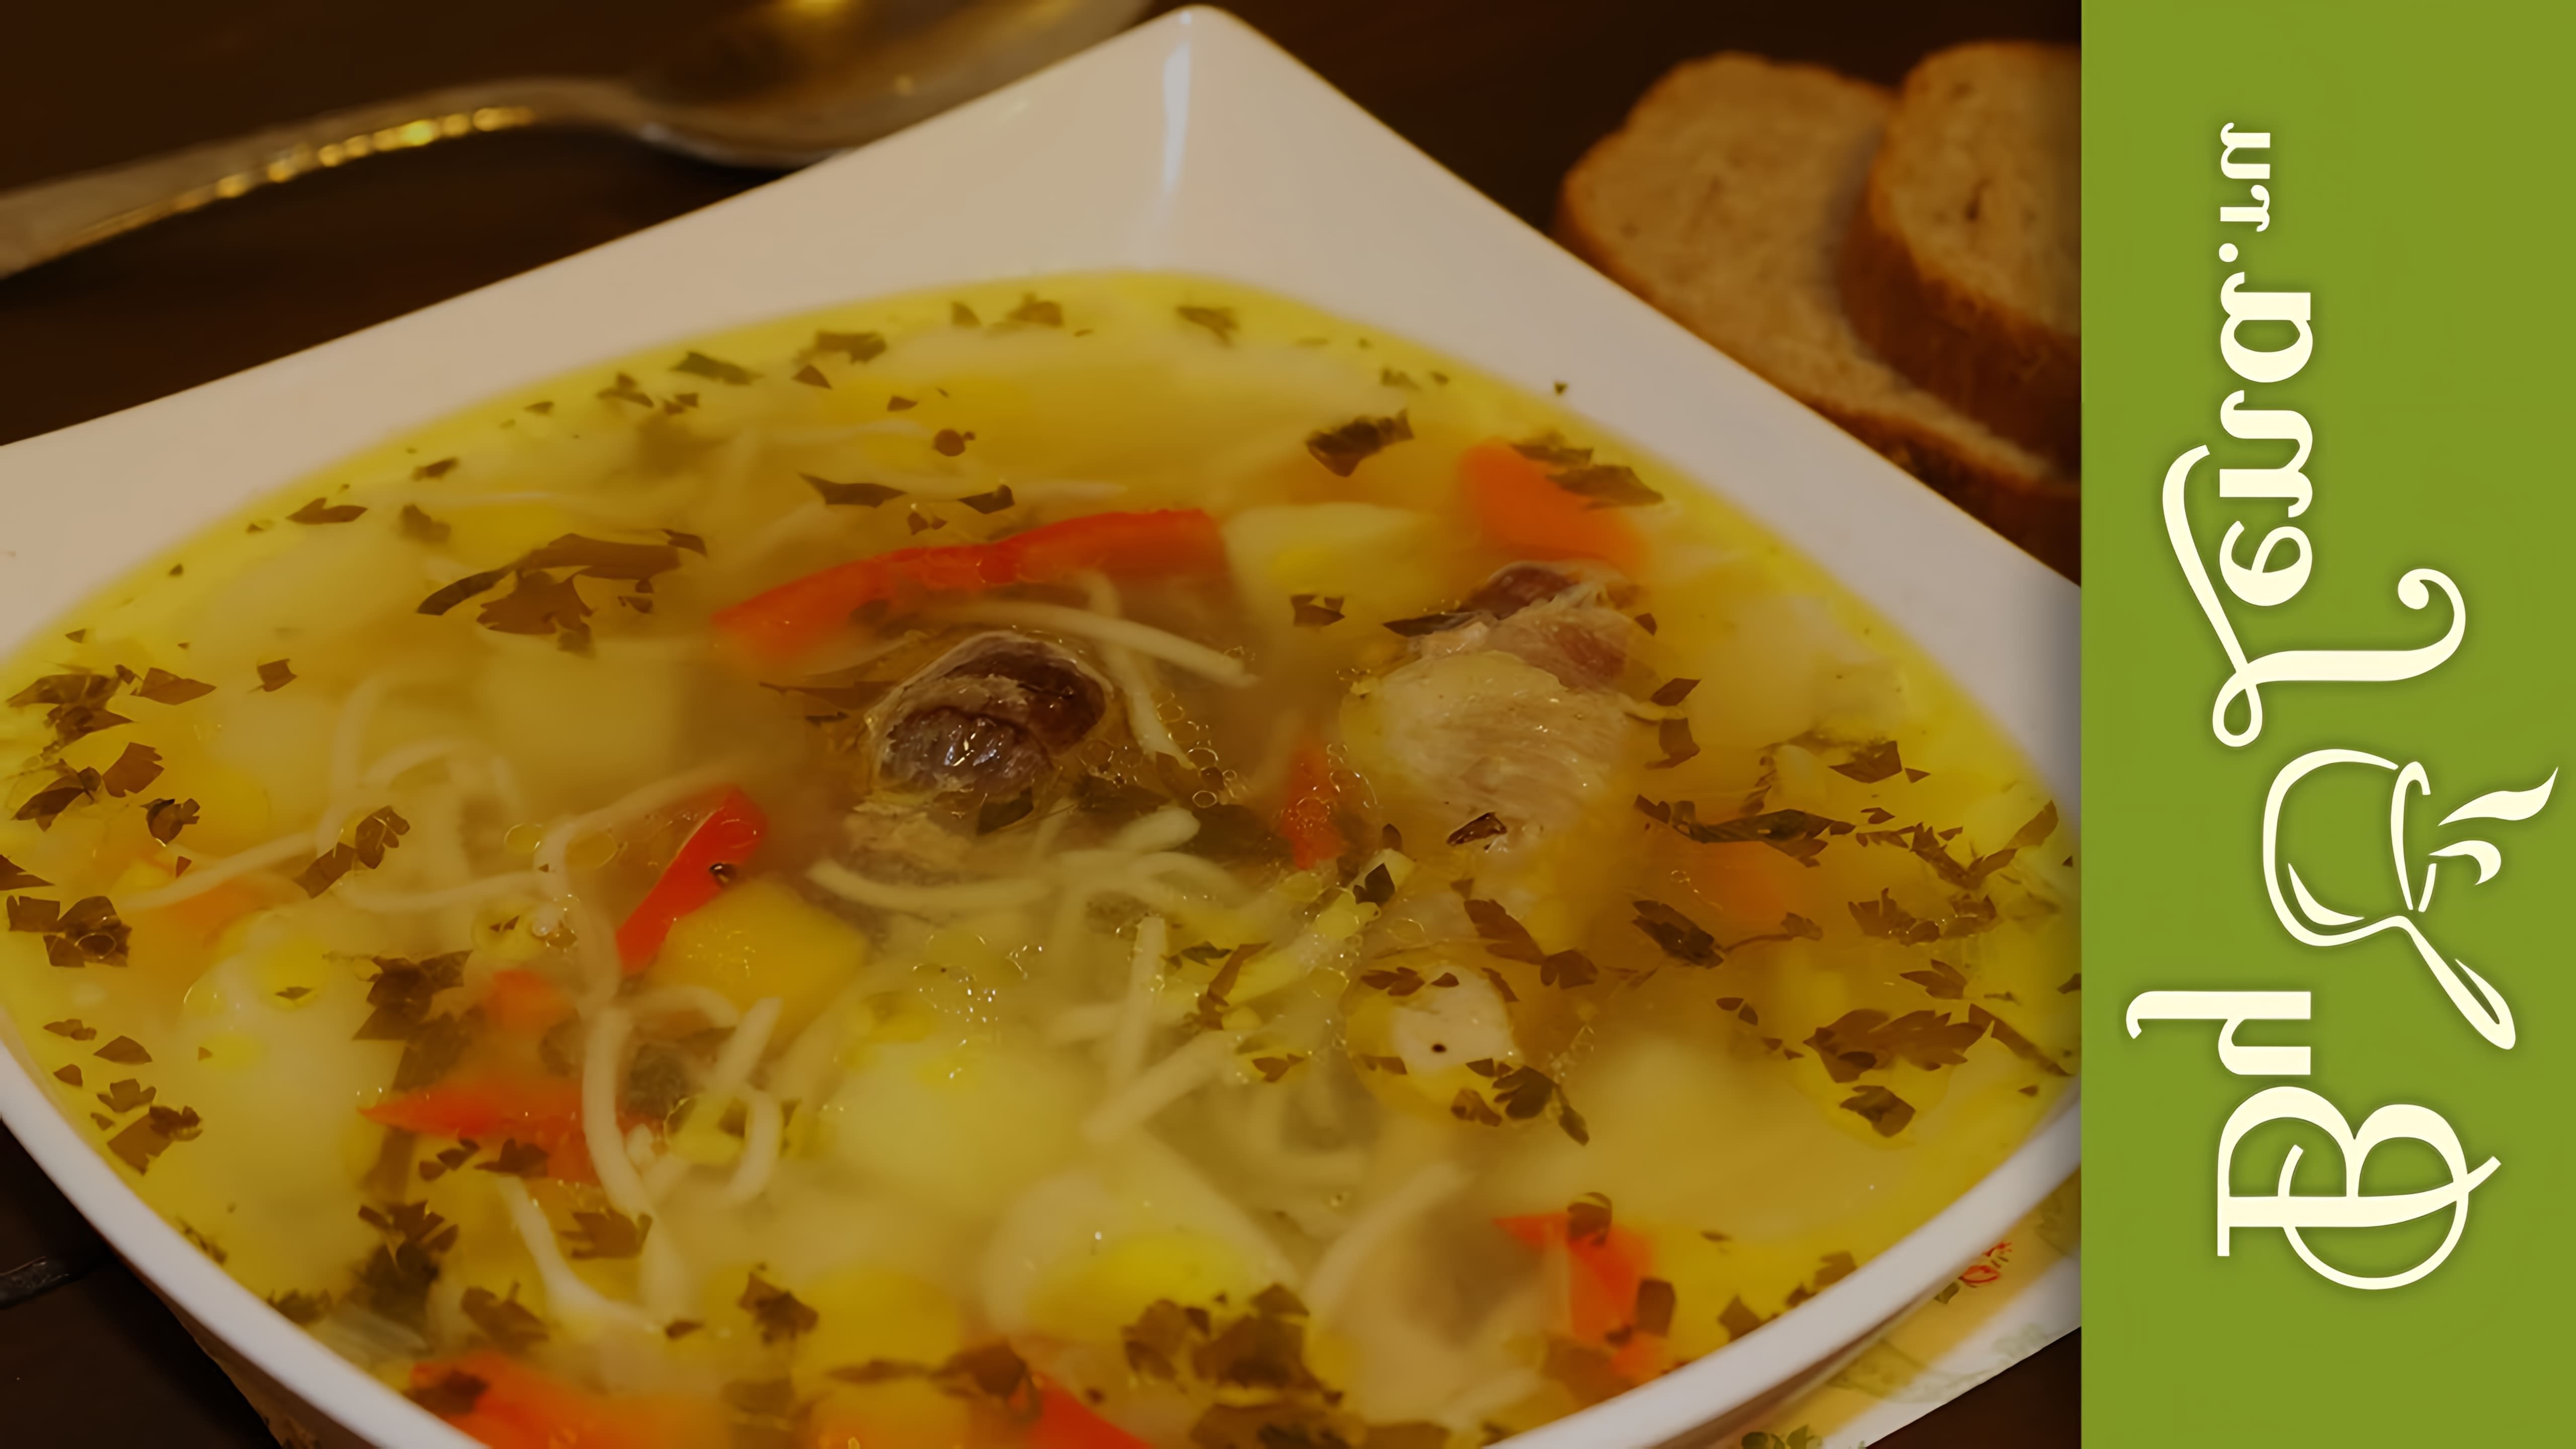 Зама Молдавская - Суп с курицей и домашней лапшой - это видео-ролик, в котором Зама Молдавская делится своим рецептом приготовления вкусного и питательного супа с курицей и домашней лапшой